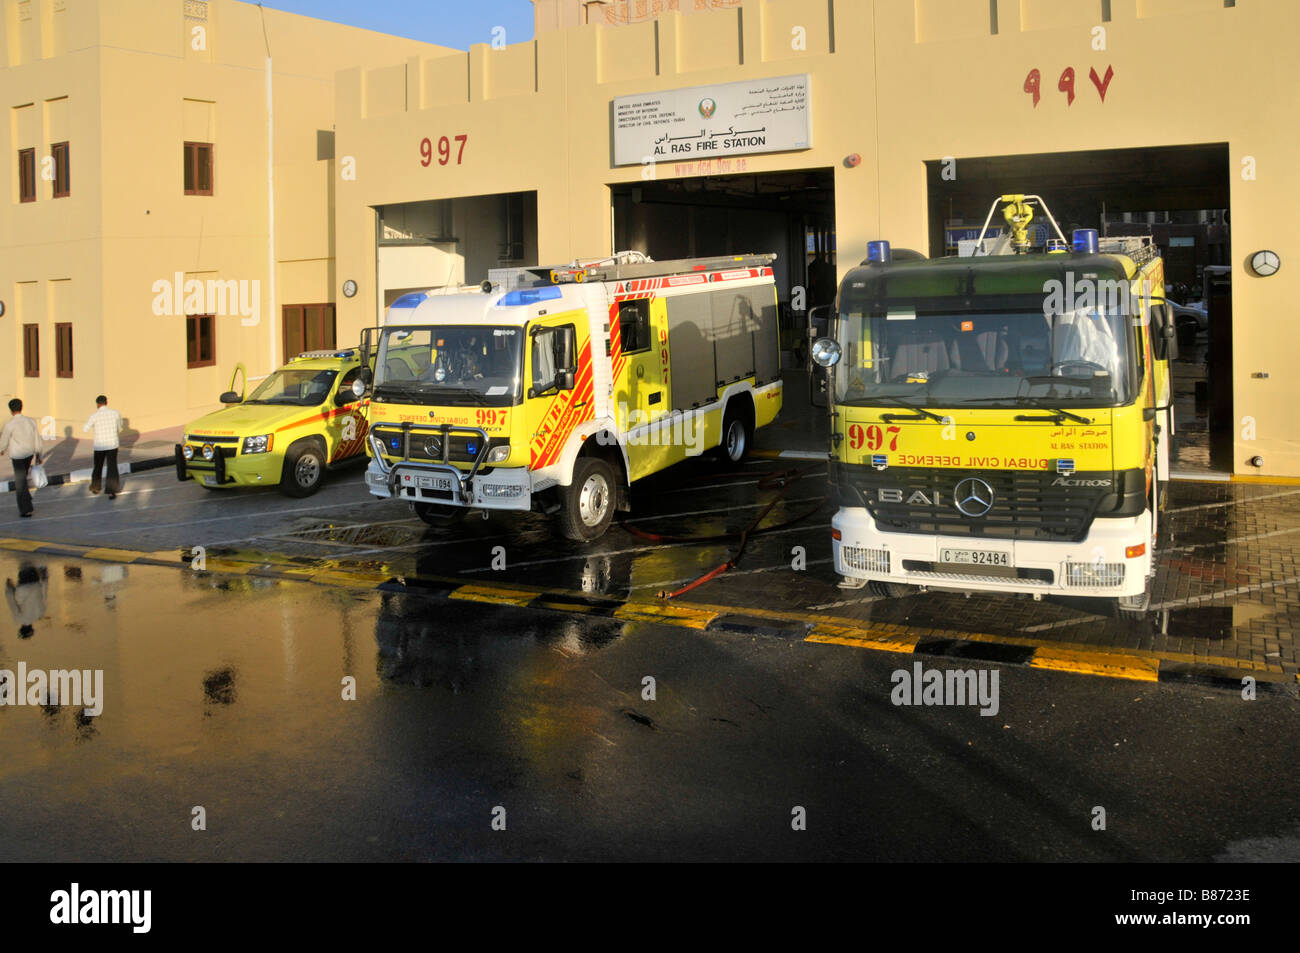 Dubai Al Ras pompiers caserne de pompiers et Défense civile Véhicules de pompiers à l'extérieur de la caserne de pompiers des Émirats arabes Unis Eau Moyen-Orient Banque D'Images